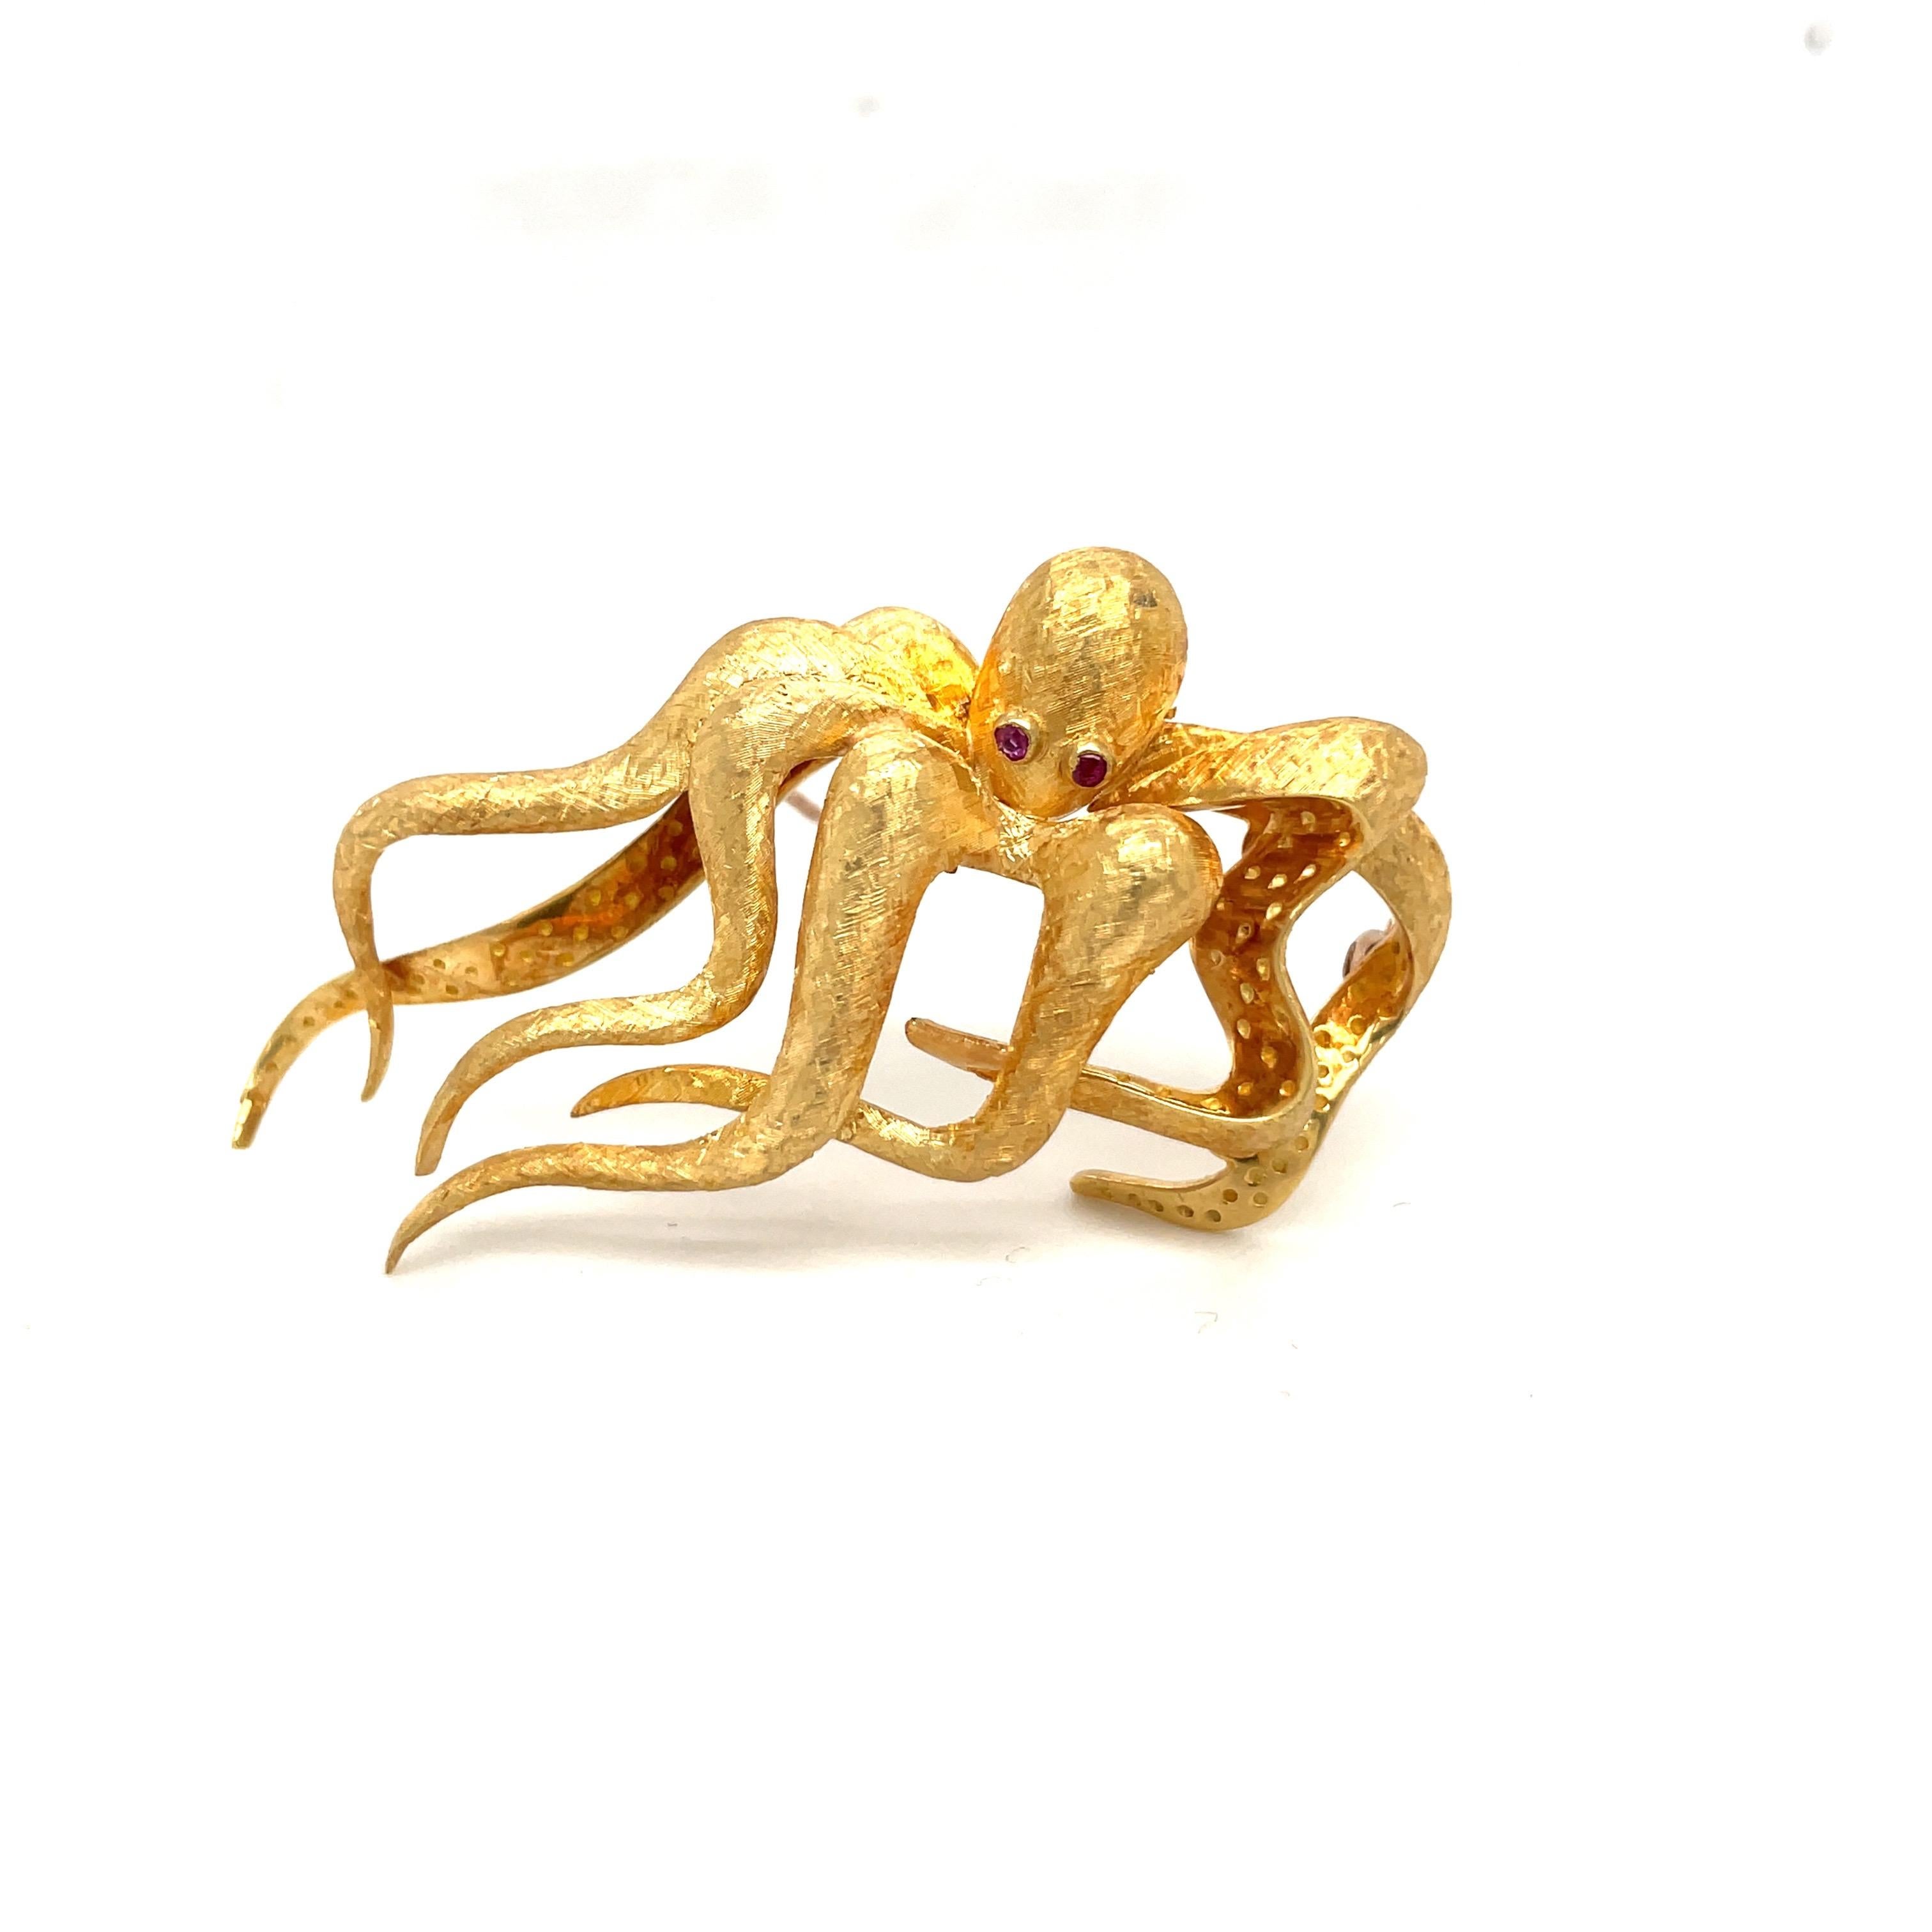 Oktopus-Brosche aus 18 Karat Gelbgold. Der Oktopus ist in einer matten Ausführung mit eingefassten Rubinaugen gefertigt. Er misst 2